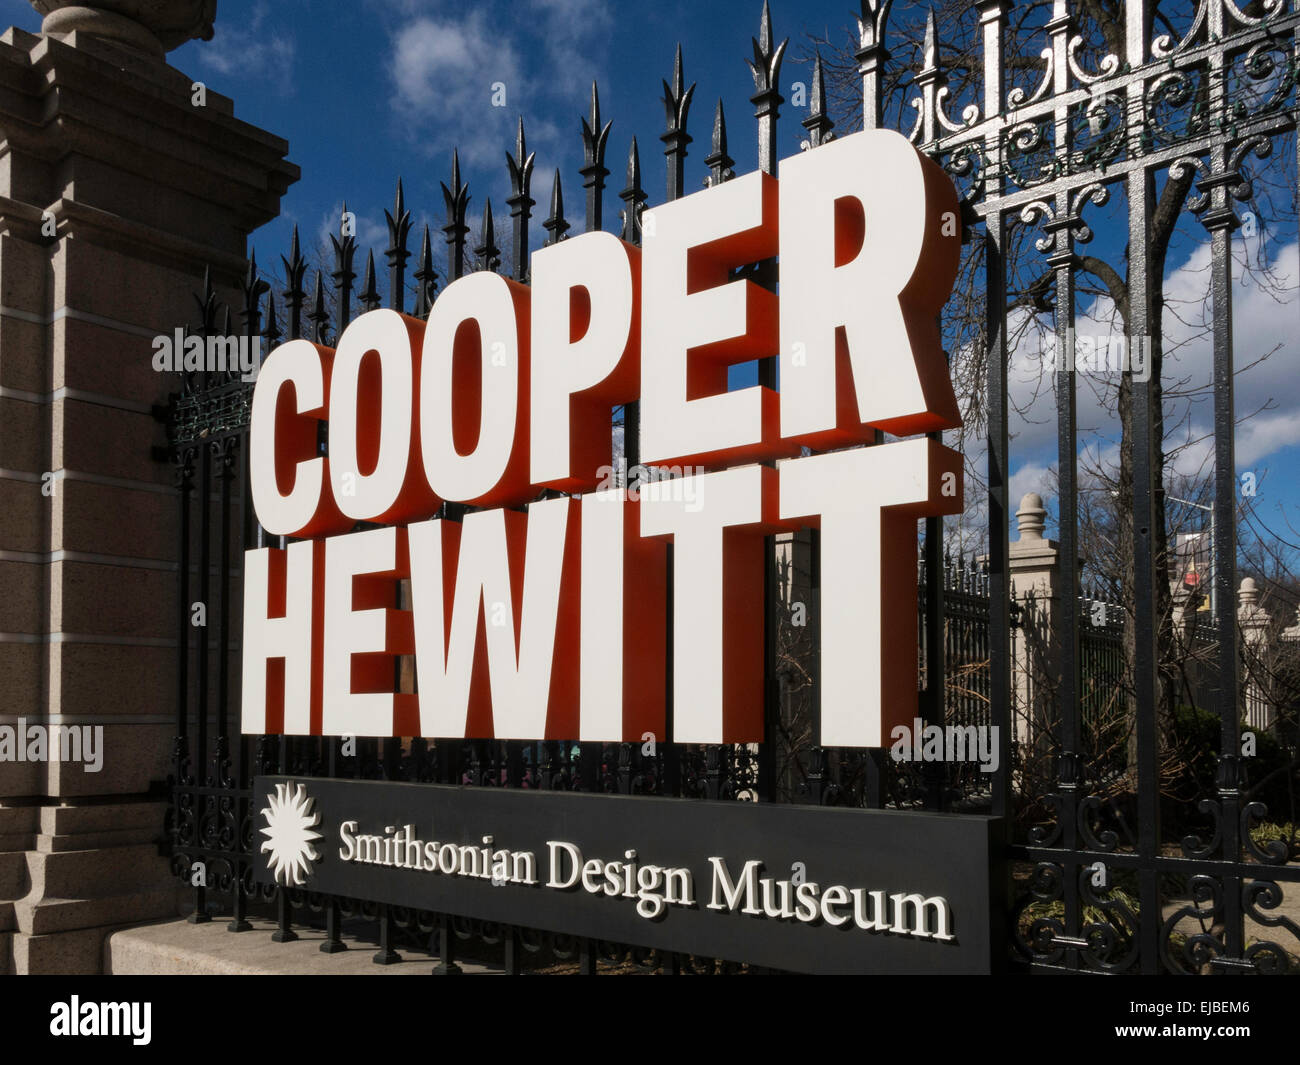 Cooper Hewitt Smithsonian Design Museum, New York City, USA Stock Photo